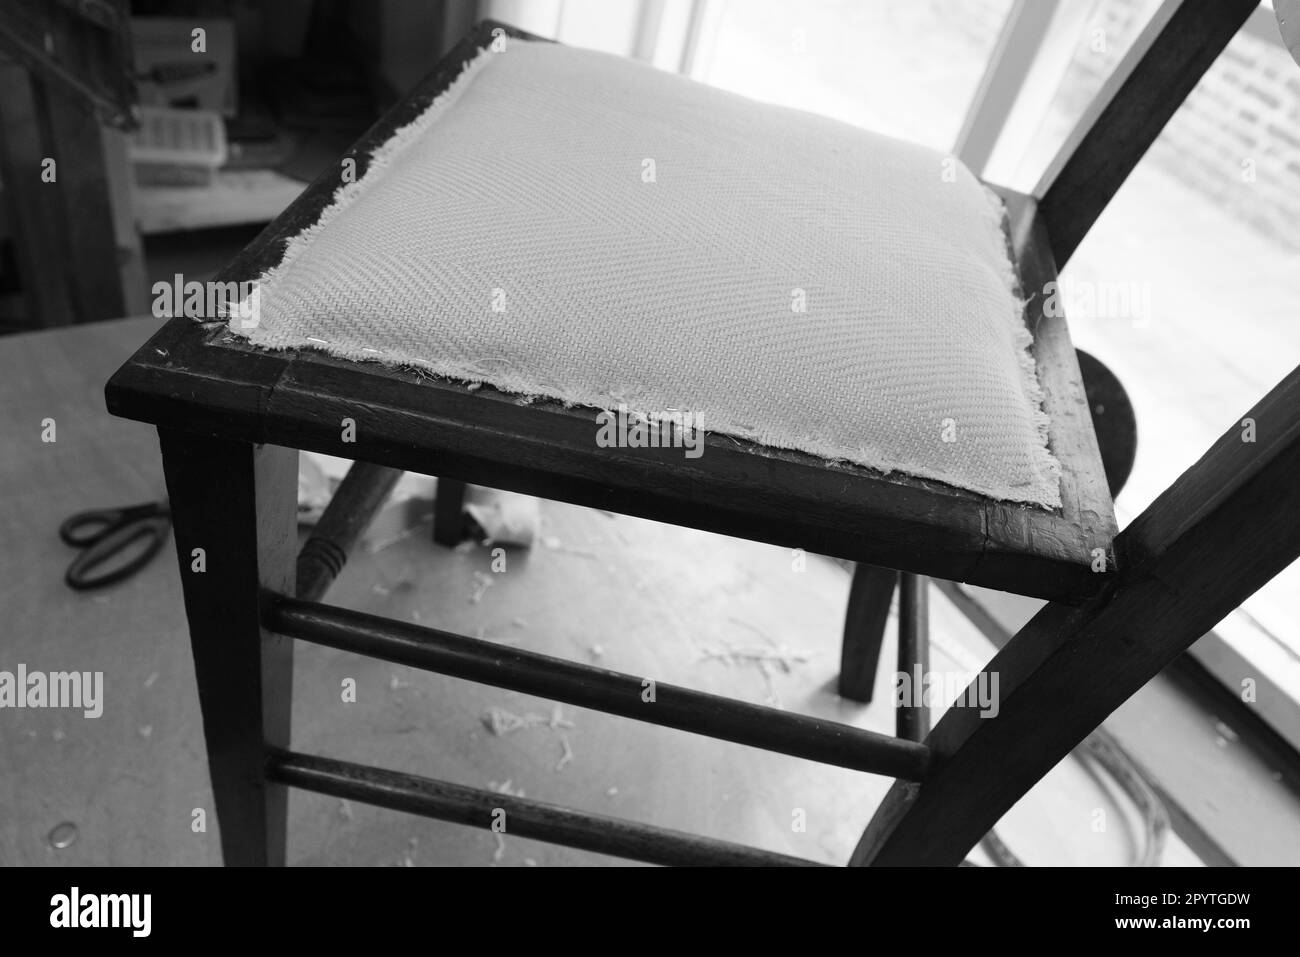 Las etapas implicadas en la retapización de una silla de comedor simple. Imágenes en blanco y negro. Foto de stock